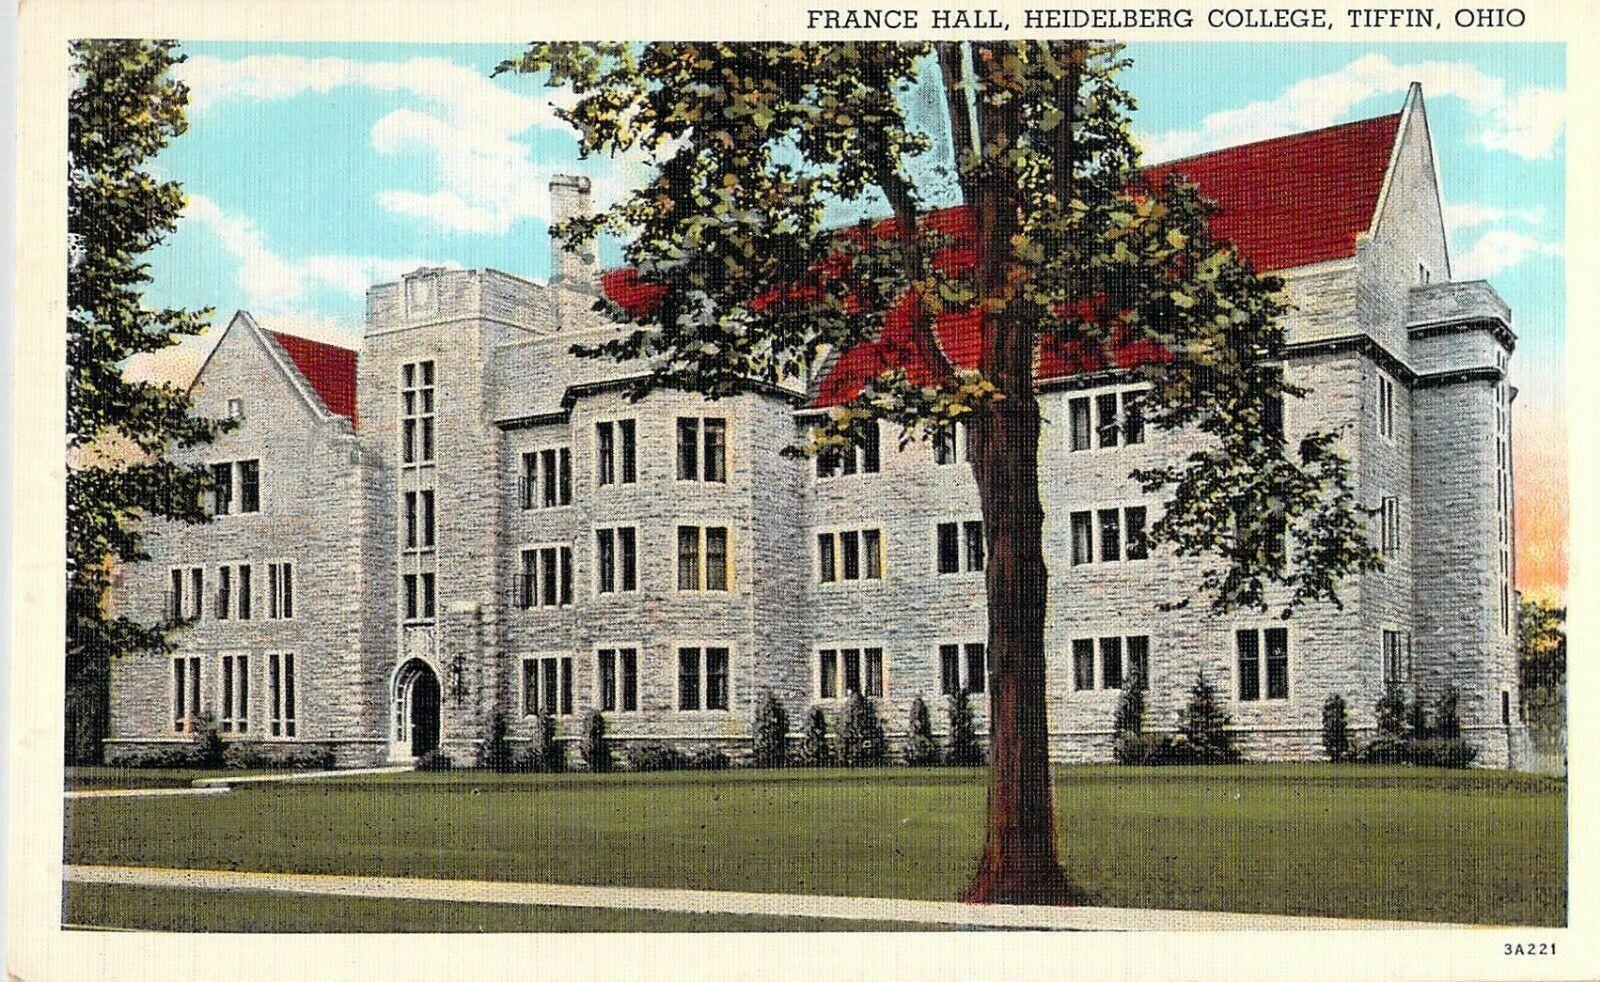 France Hall,Heidelberg College,Tiffin Ohio Sep 4 1941 postmark New Kensington Pa